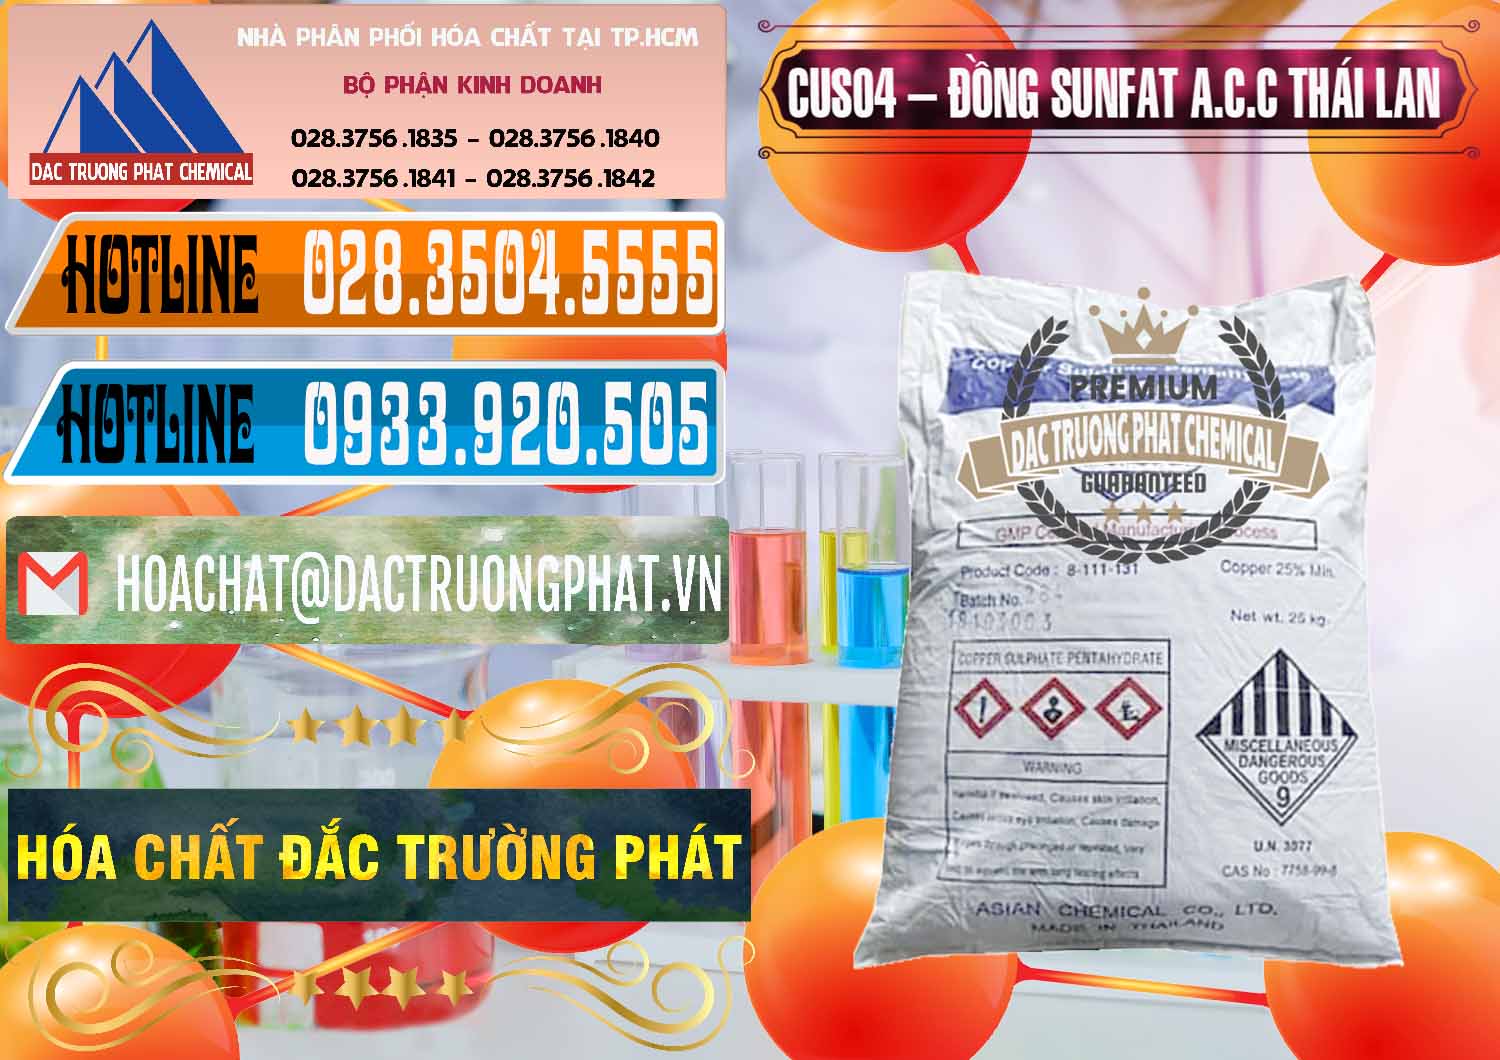 Đơn vị chuyên bán - cung ứng CuSO4 – Đồng Sunfat A.C.C Thái Lan - 0249 - Nơi chuyên bán - phân phối hóa chất tại TP.HCM - stmp.net